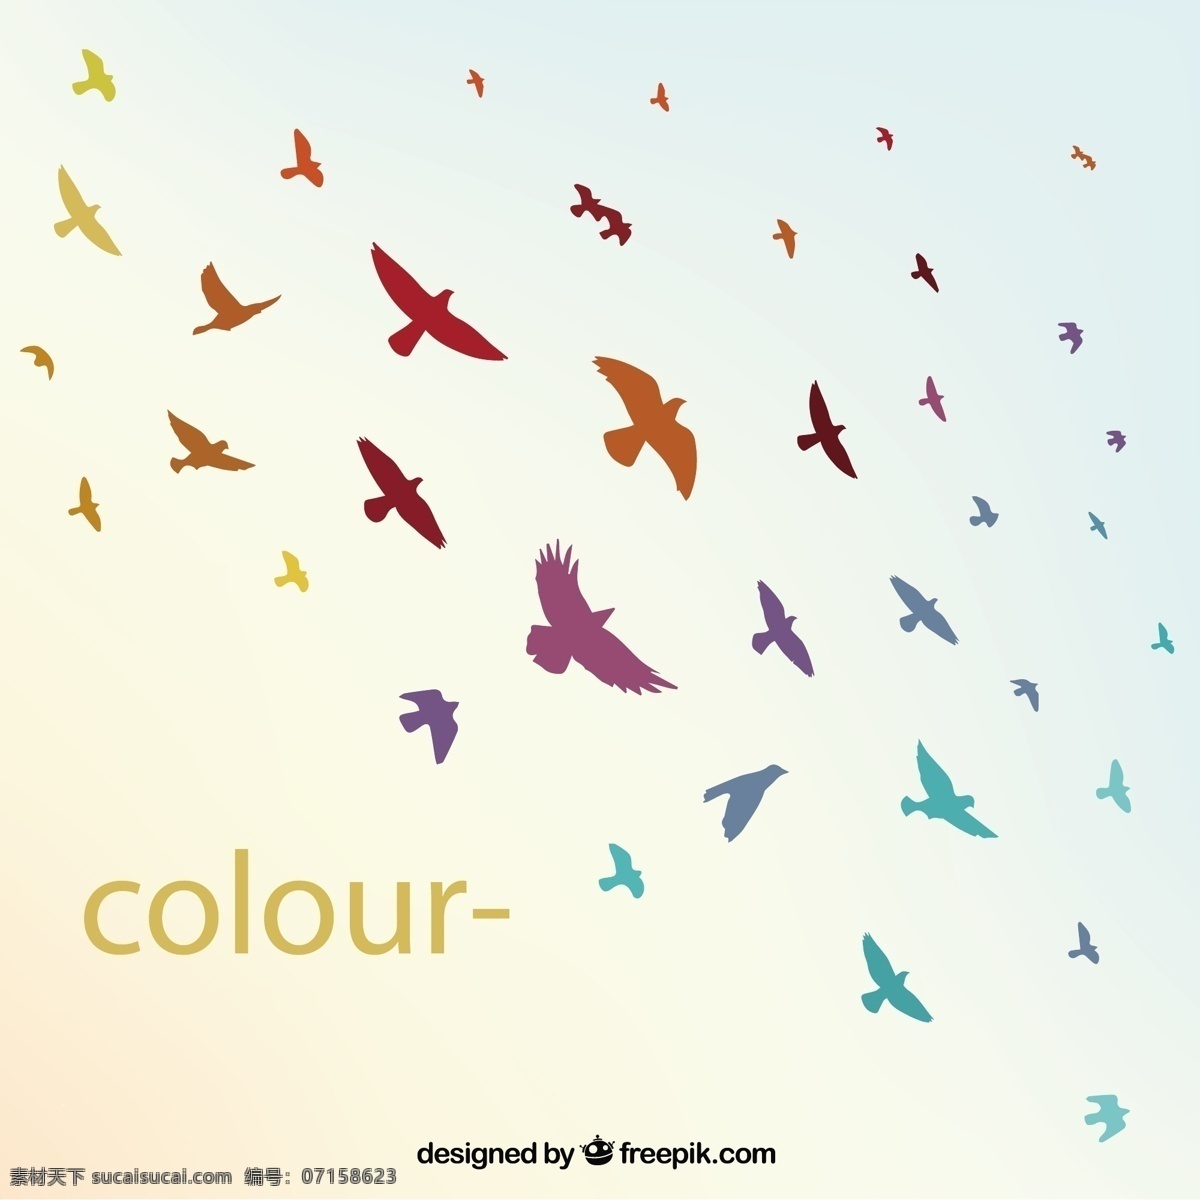 鸟类背景 背景 抽象 动物 多彩 飞行 有色 图标 高清 源文件